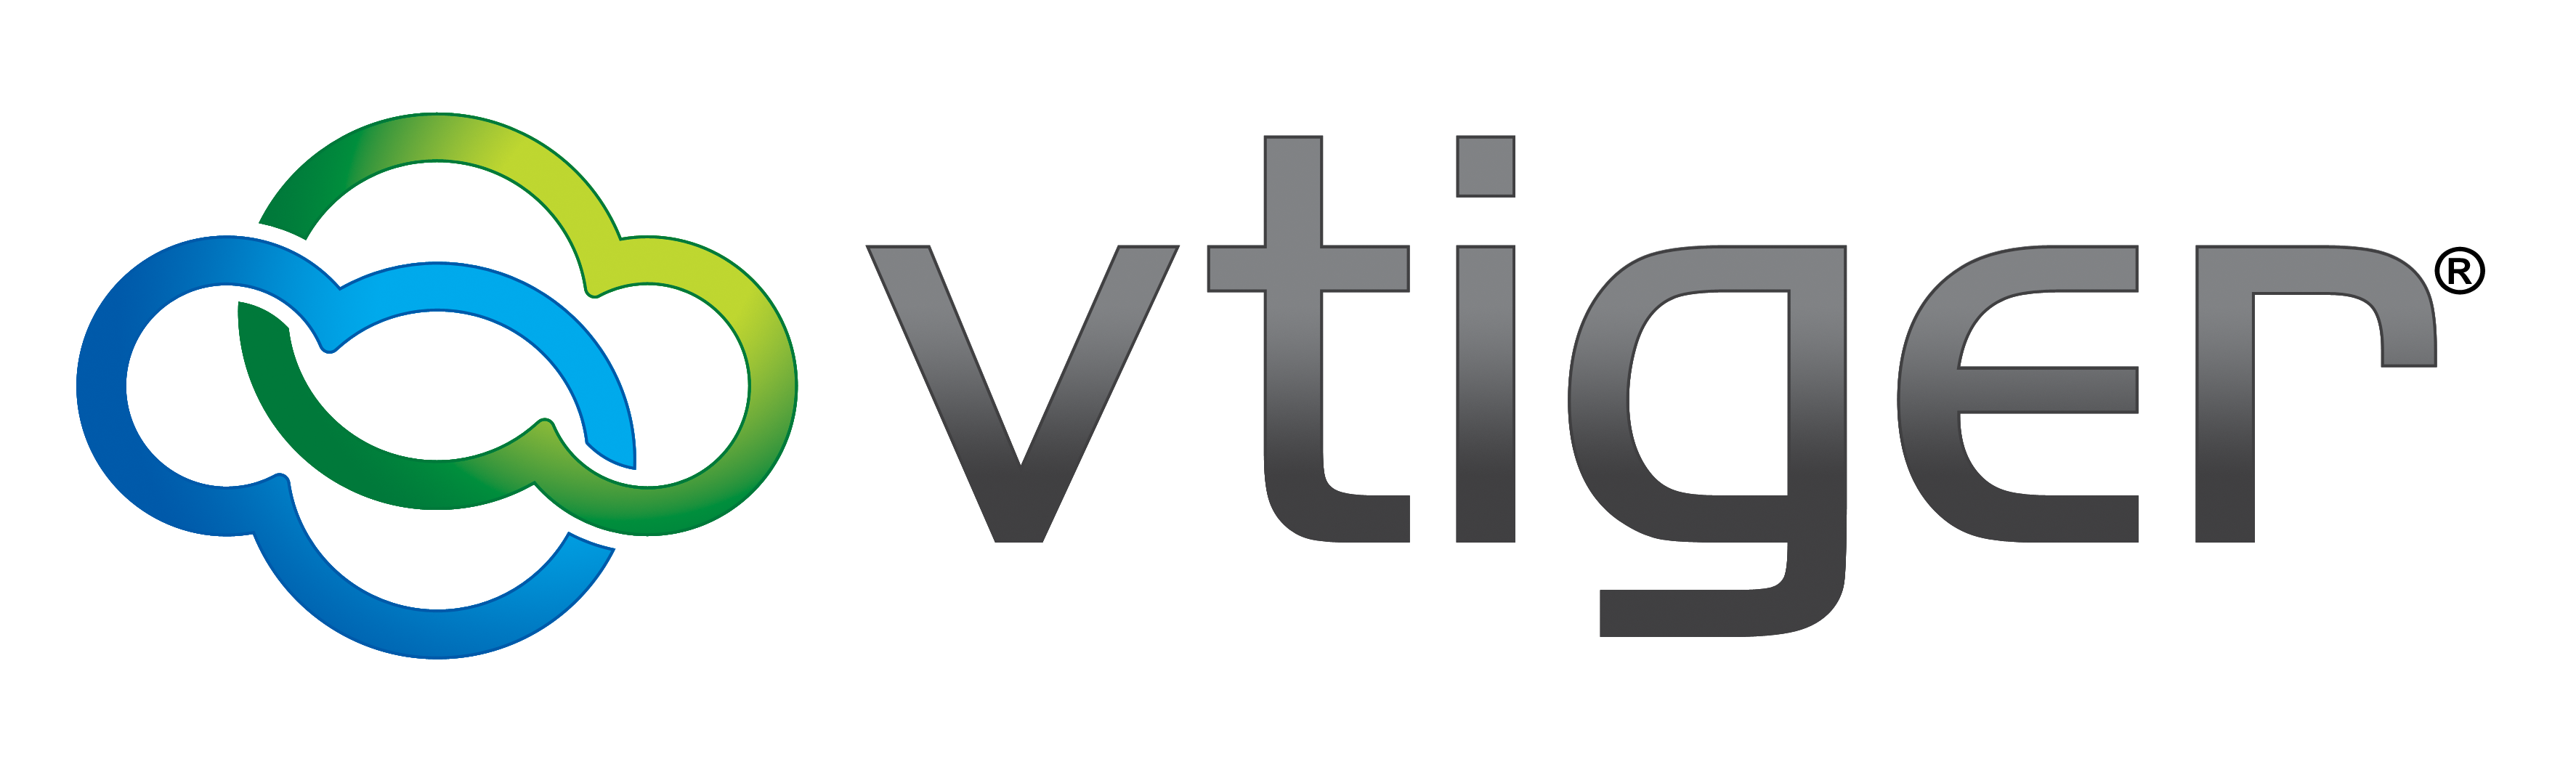 vtiger-crm-logo